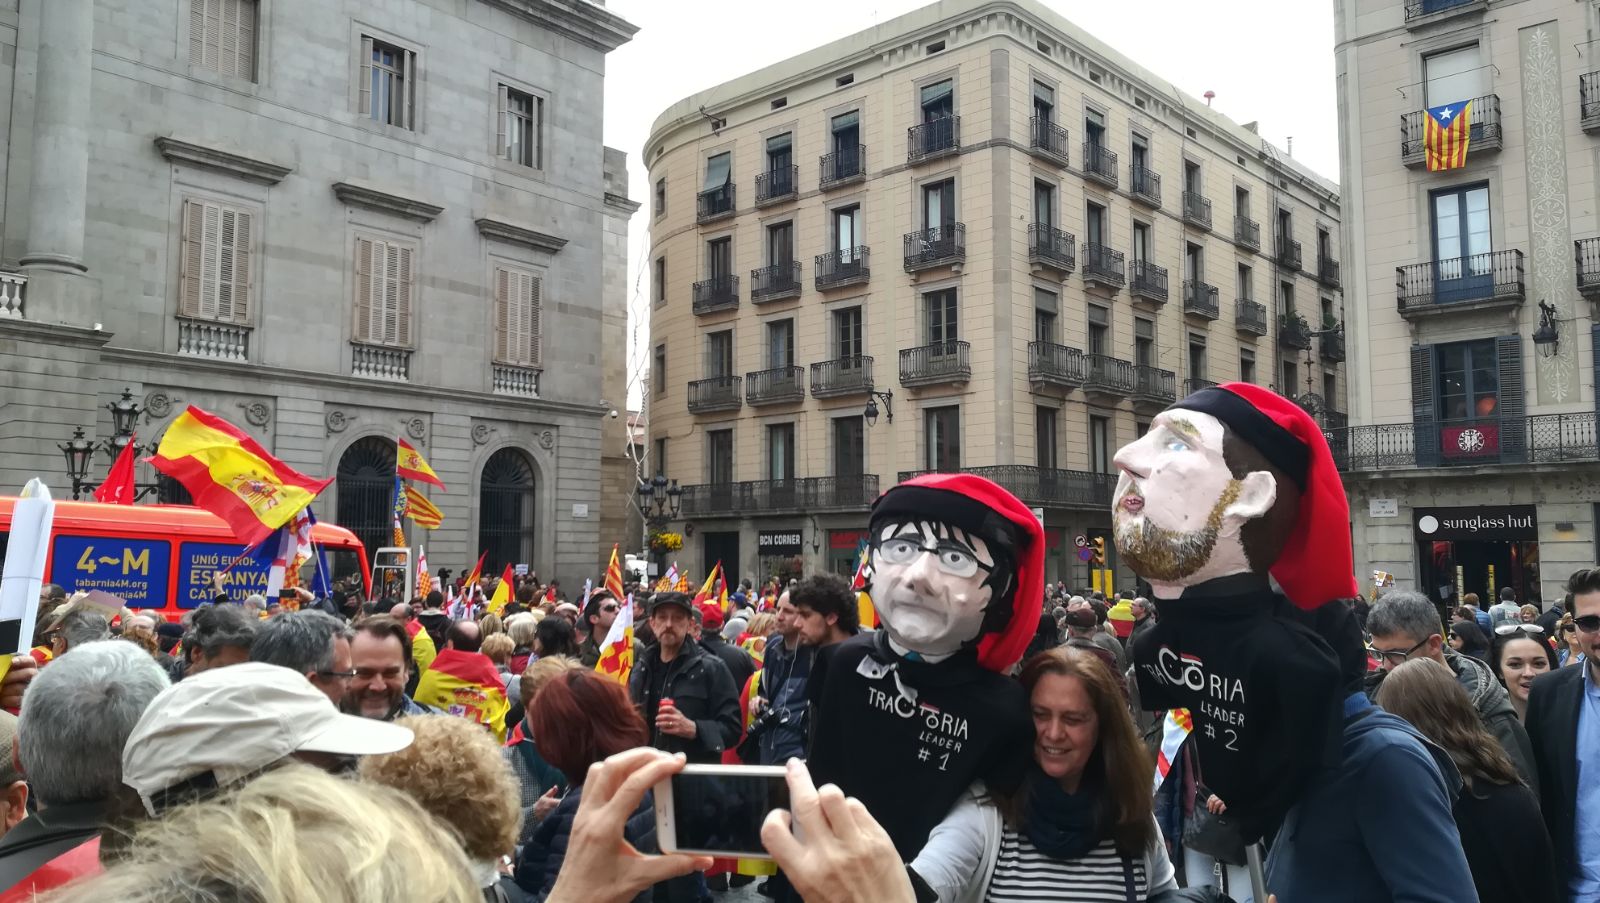 La manifestación de Tabàrnia reúne a 15.000 personas entre gritos españolistas